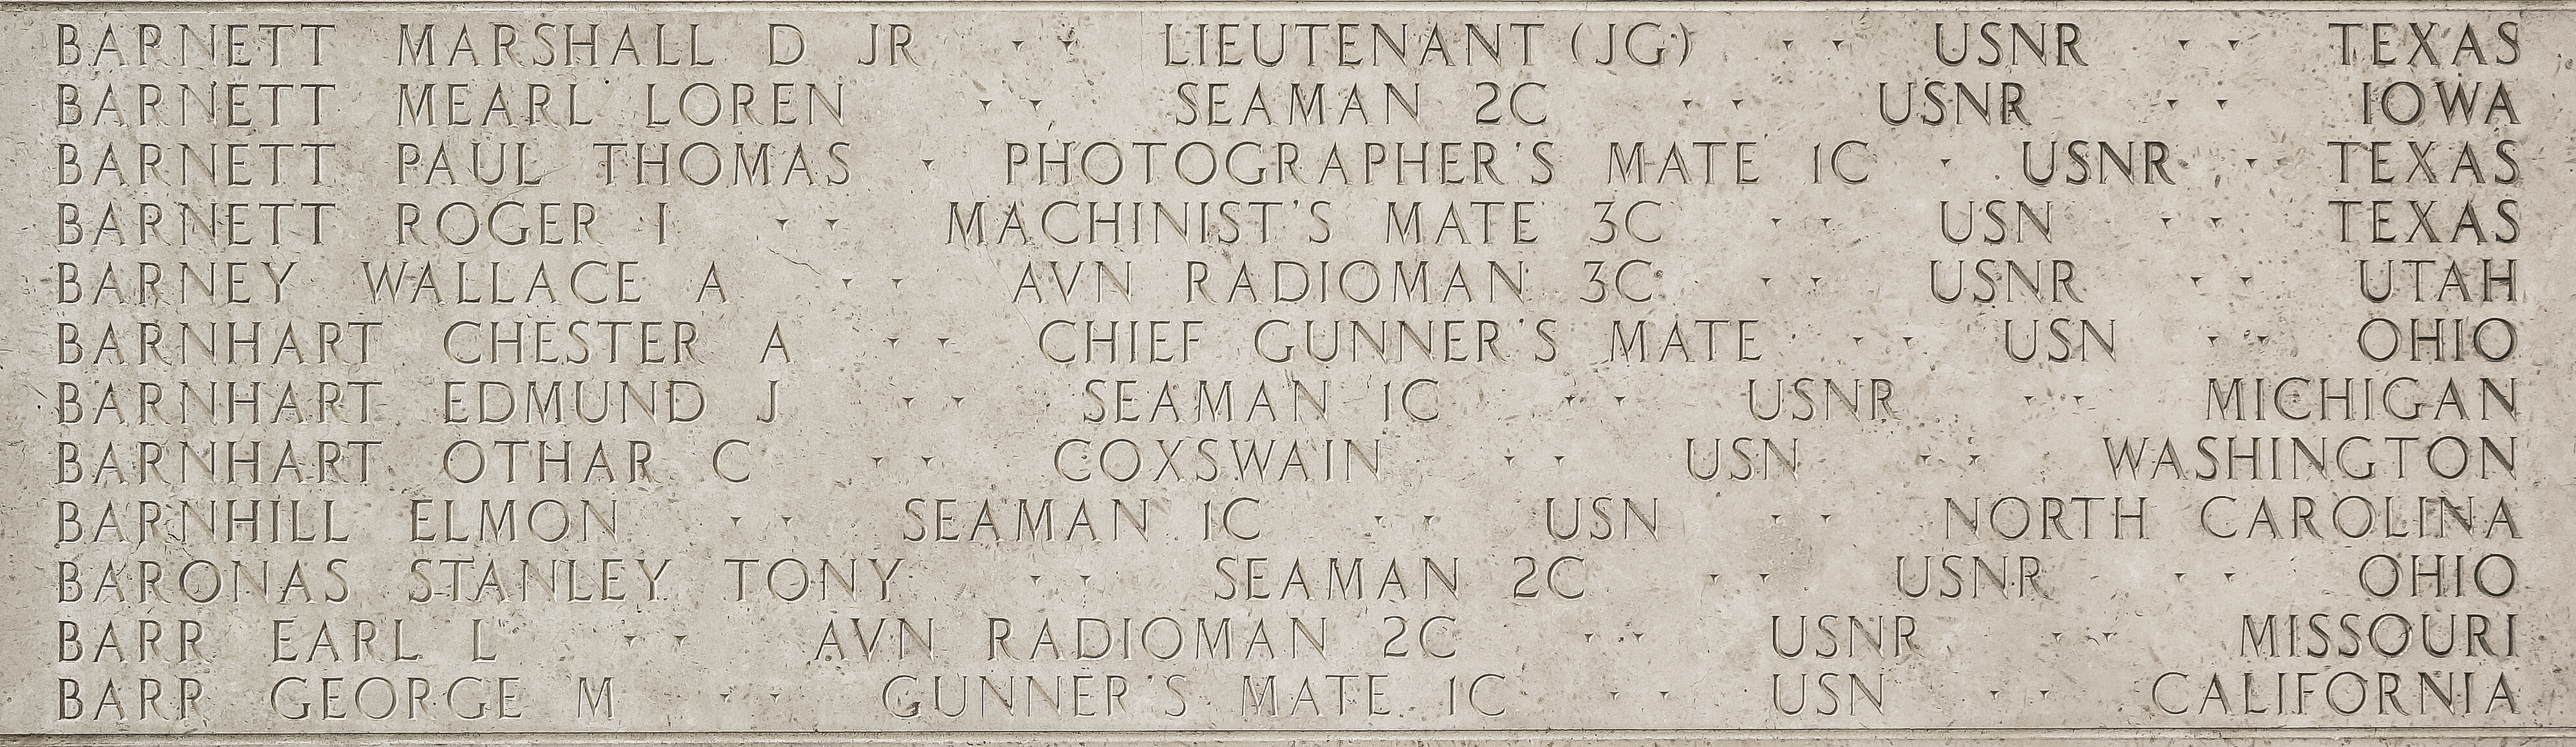 Chester A. Barnhart, Chief Gunner's Mate